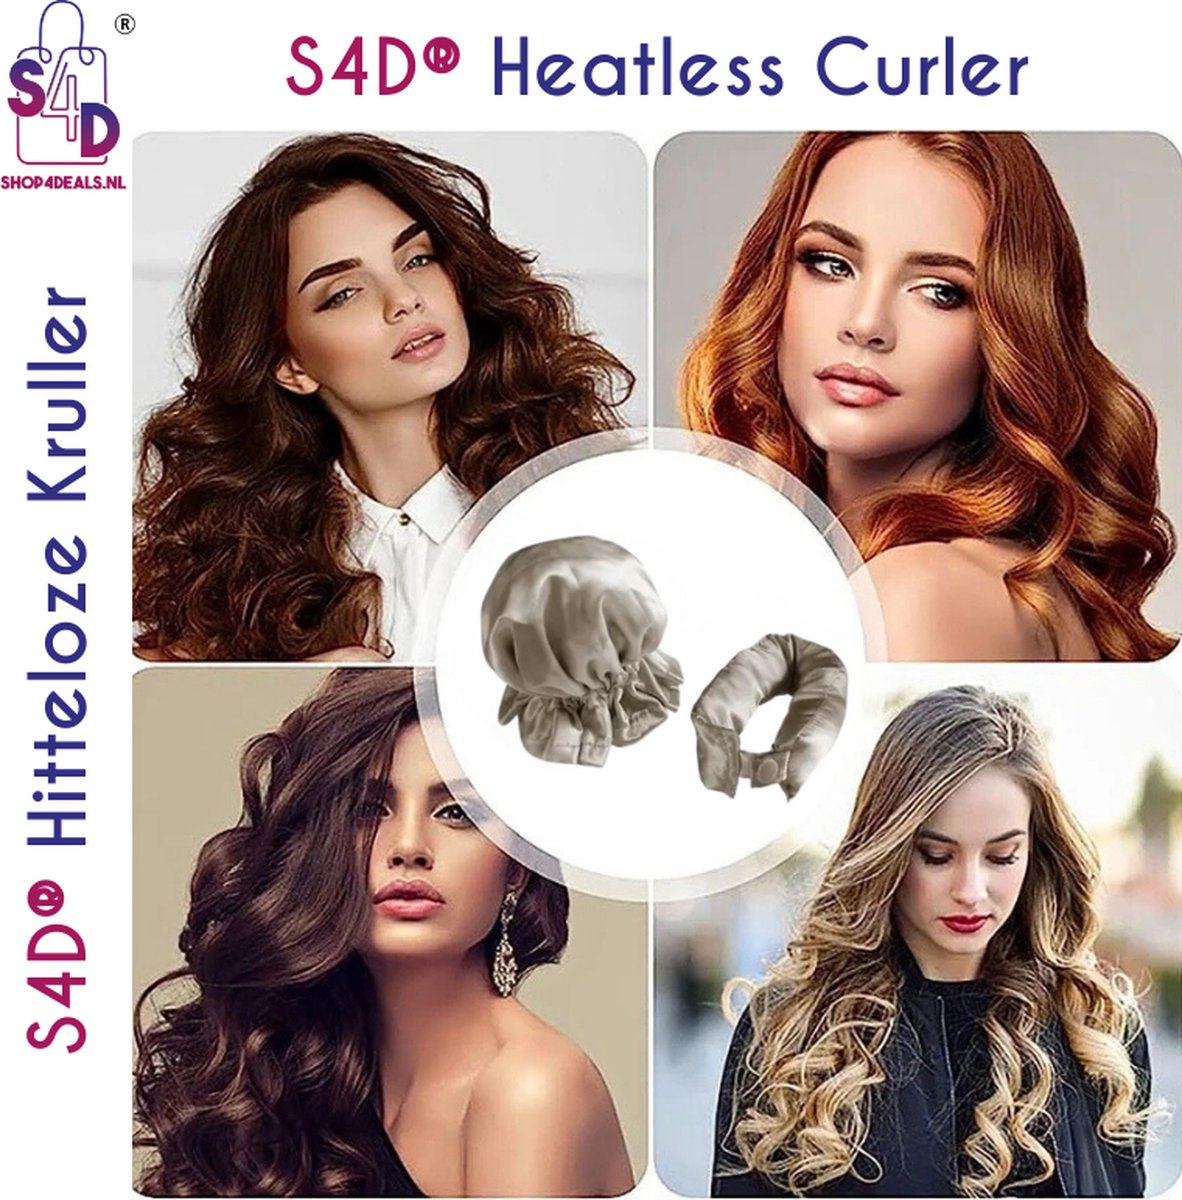 S4D® - Heatless Curls - Krulspelden - Krullen Zonder Hitte - Haarrollers - Overnight Curls - 4 Delige Set - Beige - S4D®